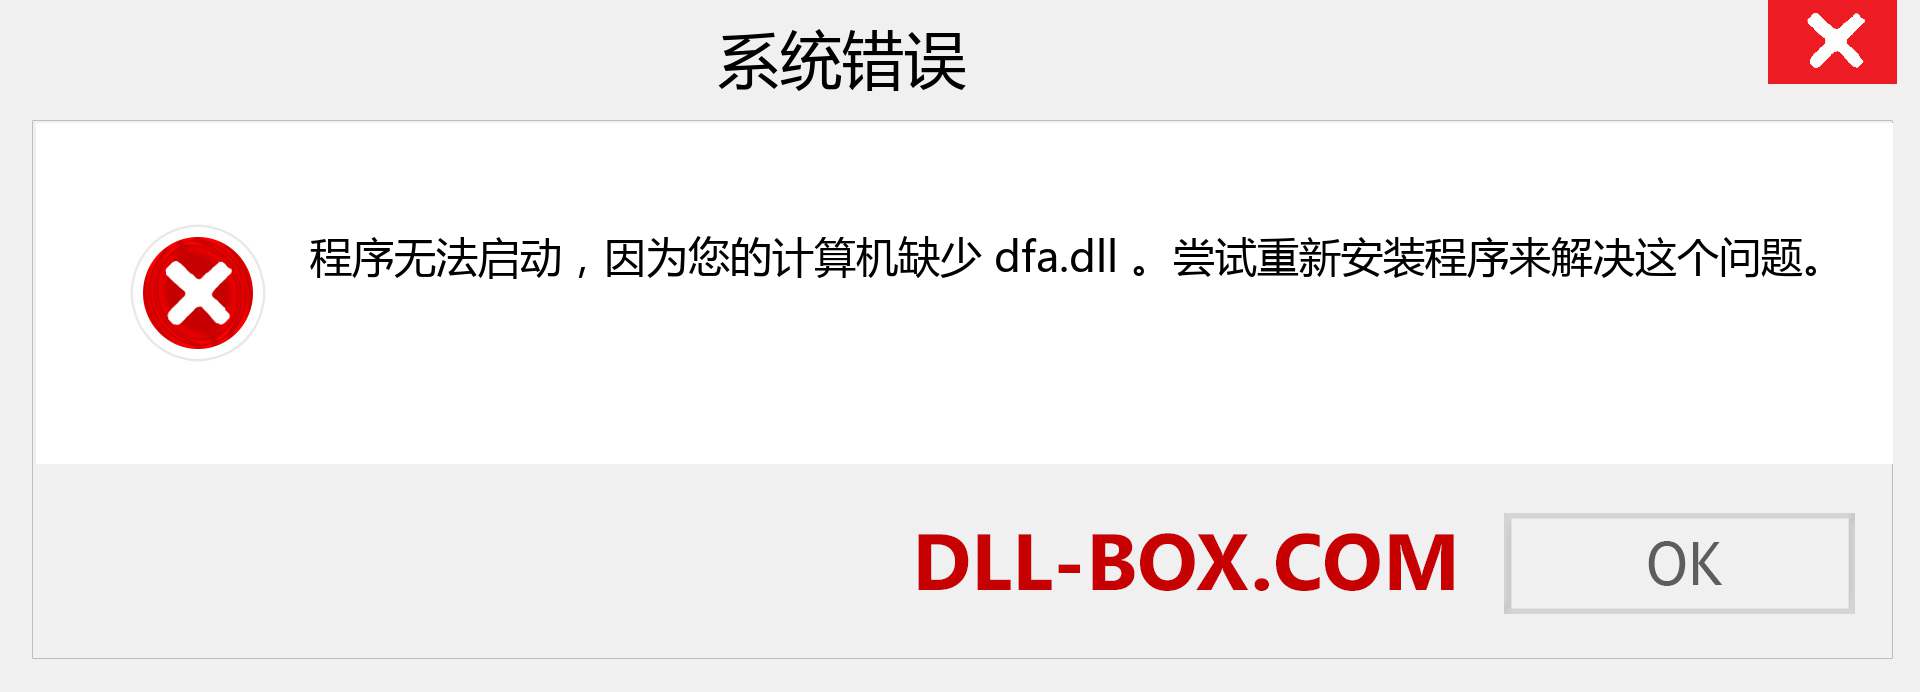 dfa.dll 文件丢失？。 适用于 Windows 7、8、10 的下载 - 修复 Windows、照片、图像上的 dfa dll 丢失错误